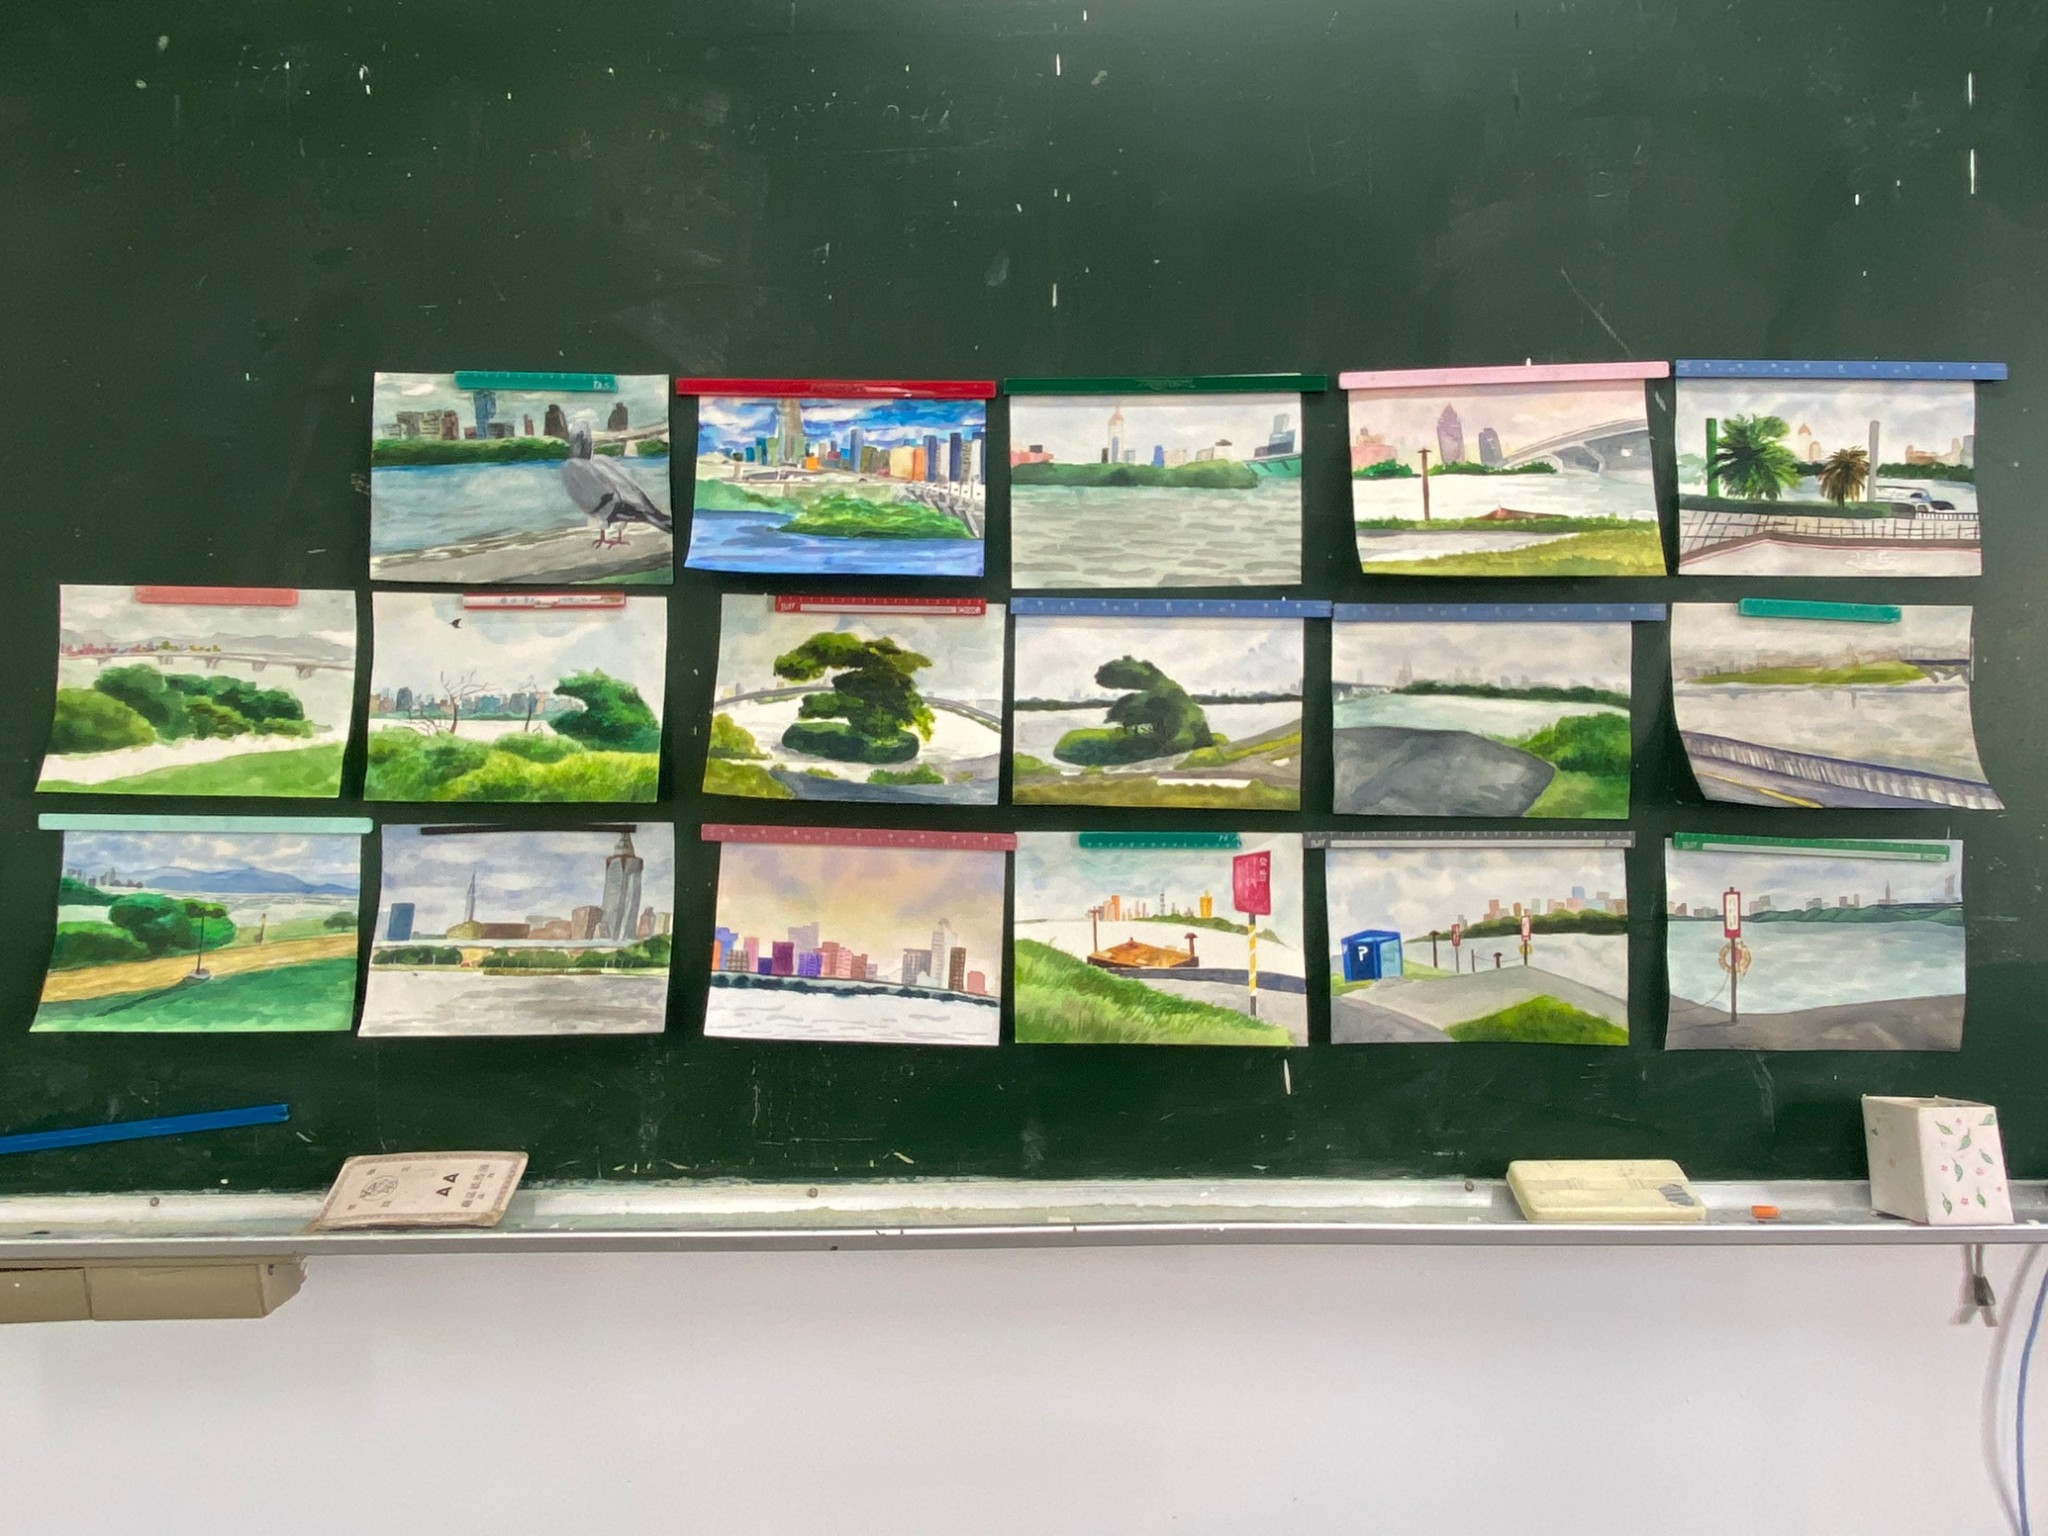 學生繪製淡水河畔圖後經由課程了解淡水河畔香花產業.jpg